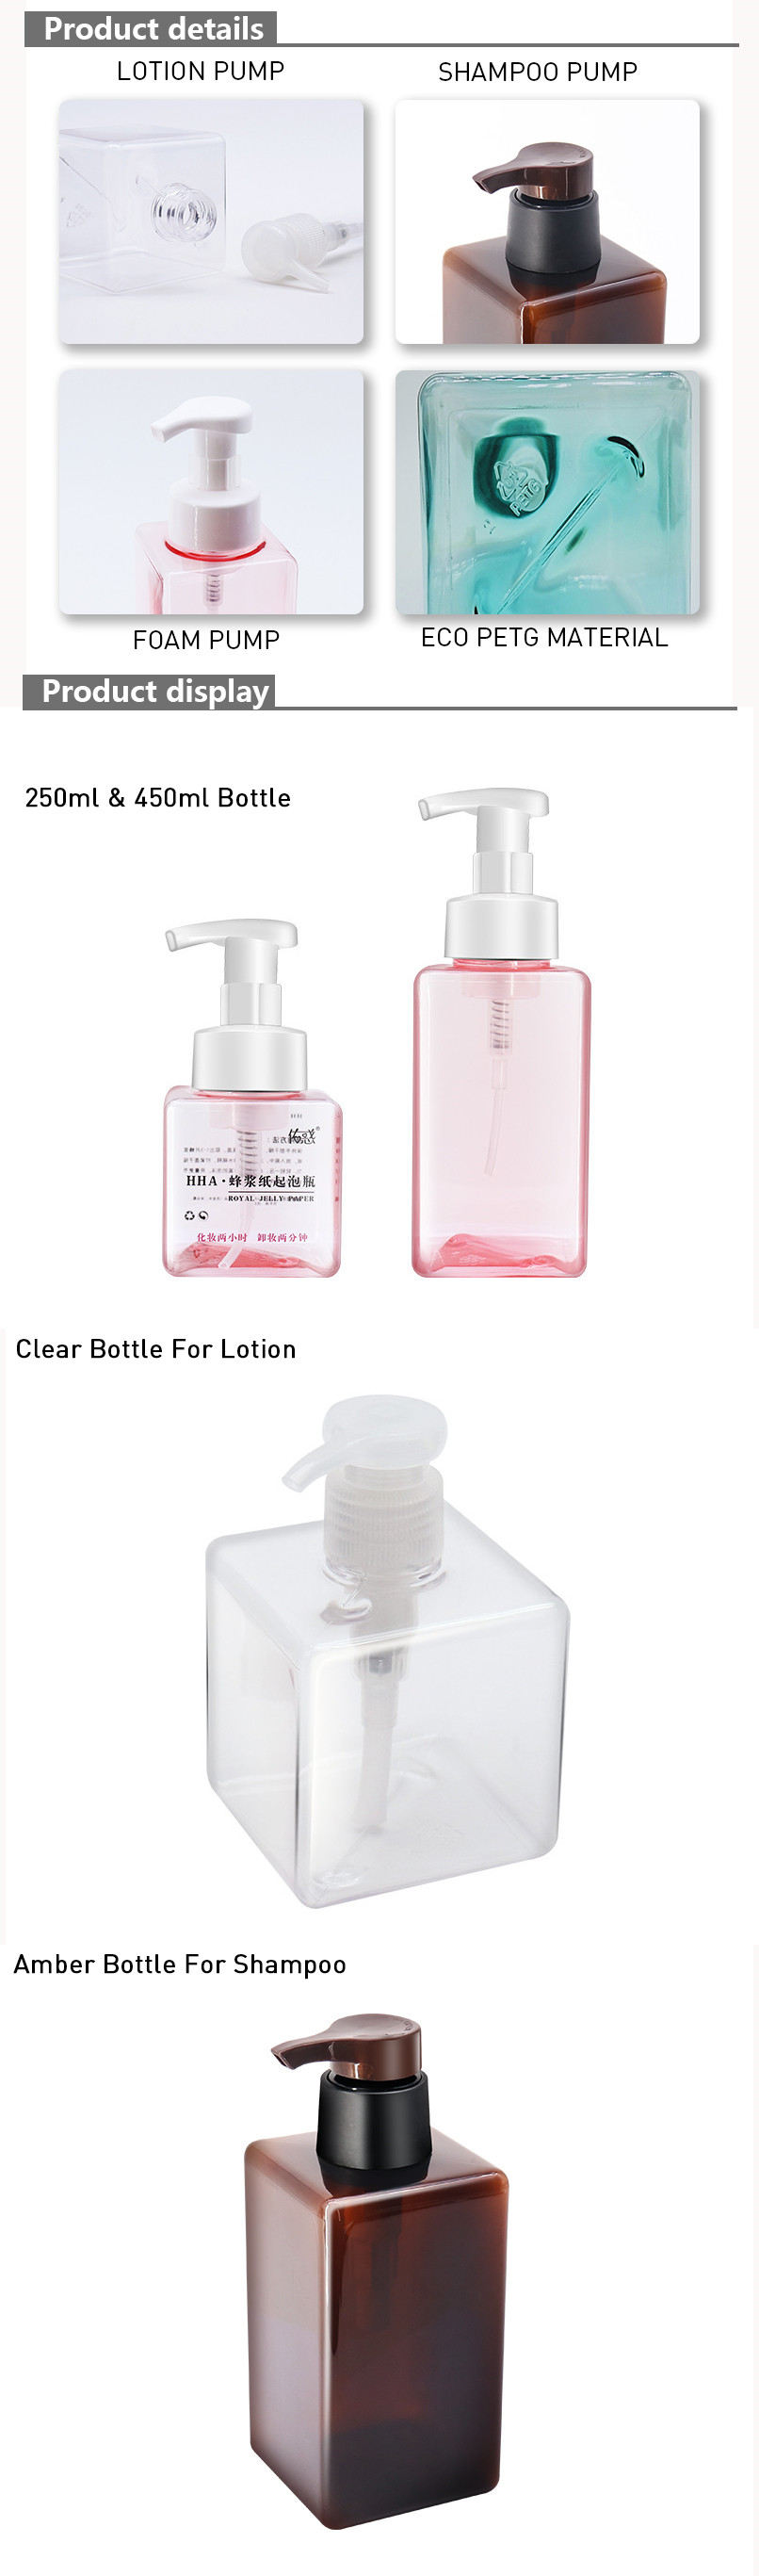 Square PETG Shampoo Bottle